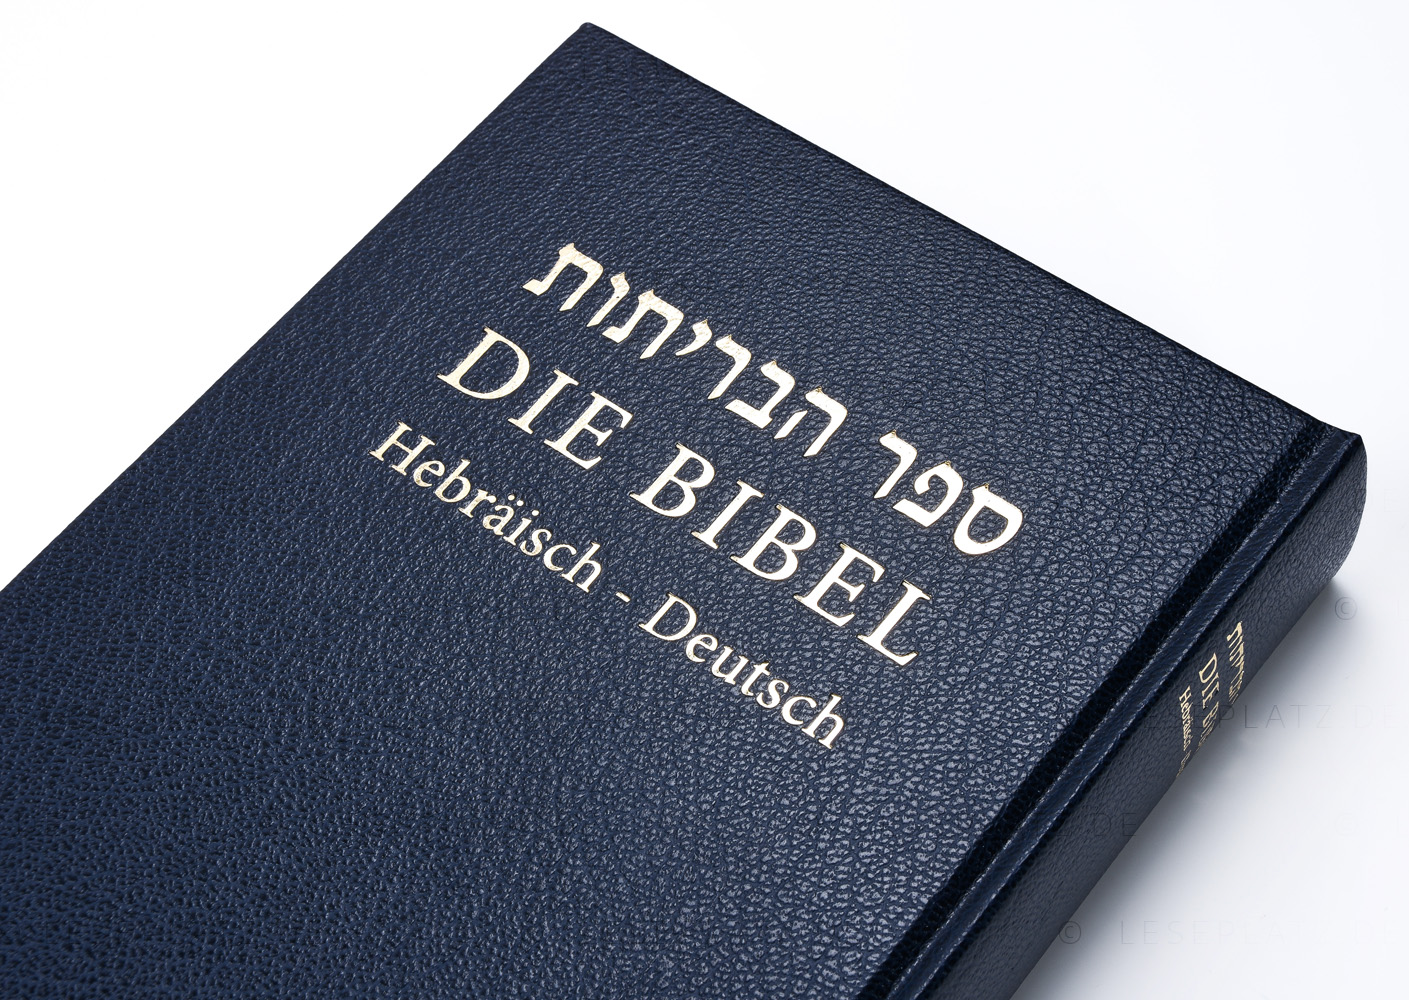 Die Bibel - Hebräisch-Deutsch (Hardcover)